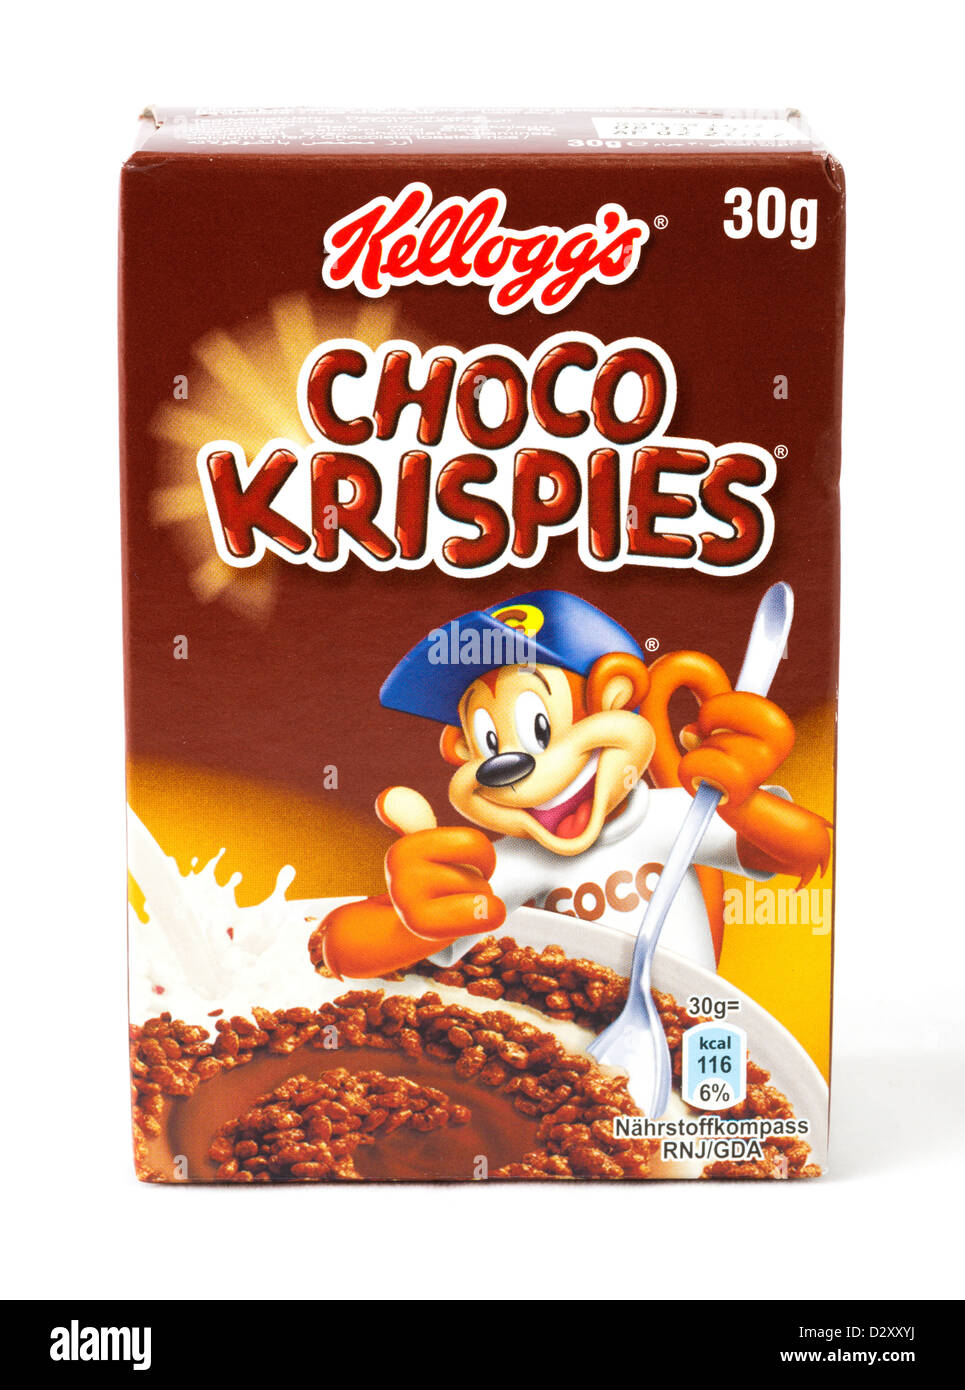 Kleine Packung von Kellogg's Choco Krispies Frühstück Getreide  Stockfotografie - Alamy